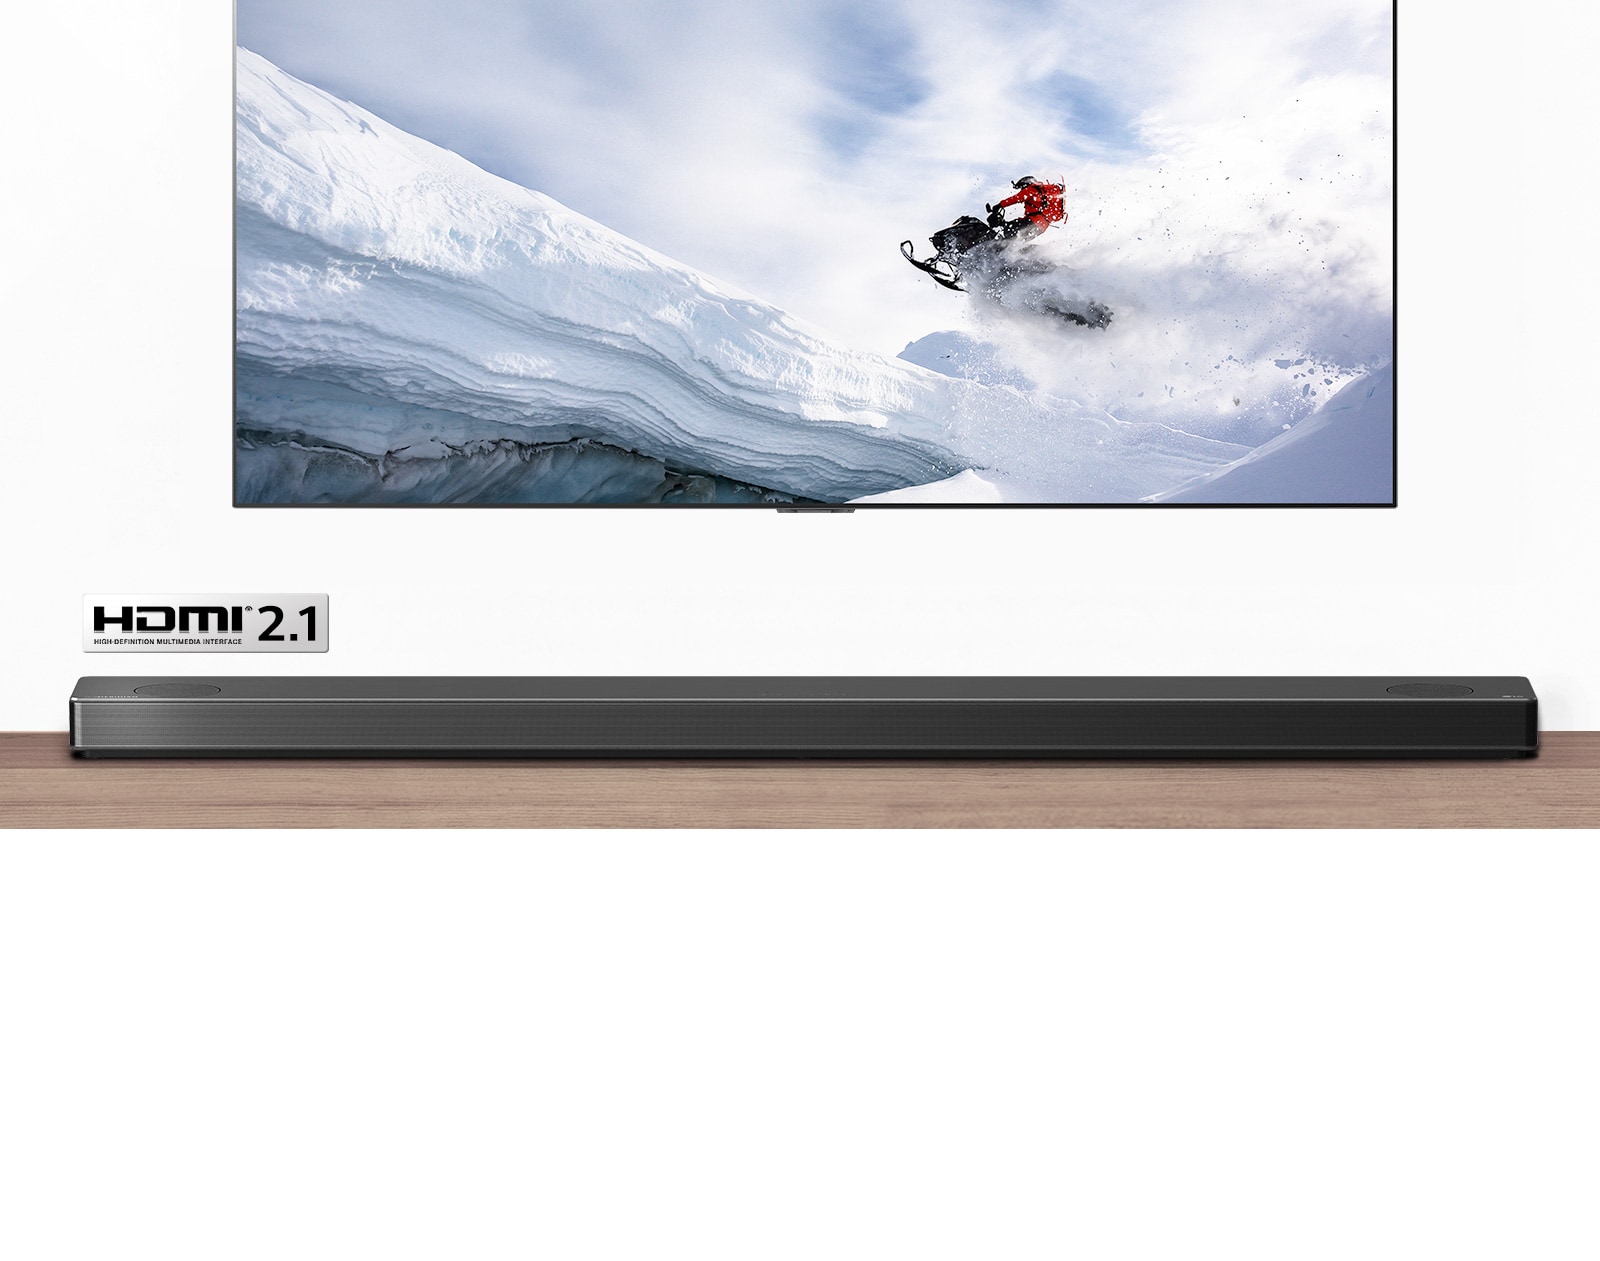 תצוגה של טלוויזיה וסאונד-בר מלפנים. טלוויזיה מציגה איש רוכב על אופנוע שלג בהרים המושלגים. הלוגו של HDMI 2.1 מופיע מתחת לטלוויזיה.